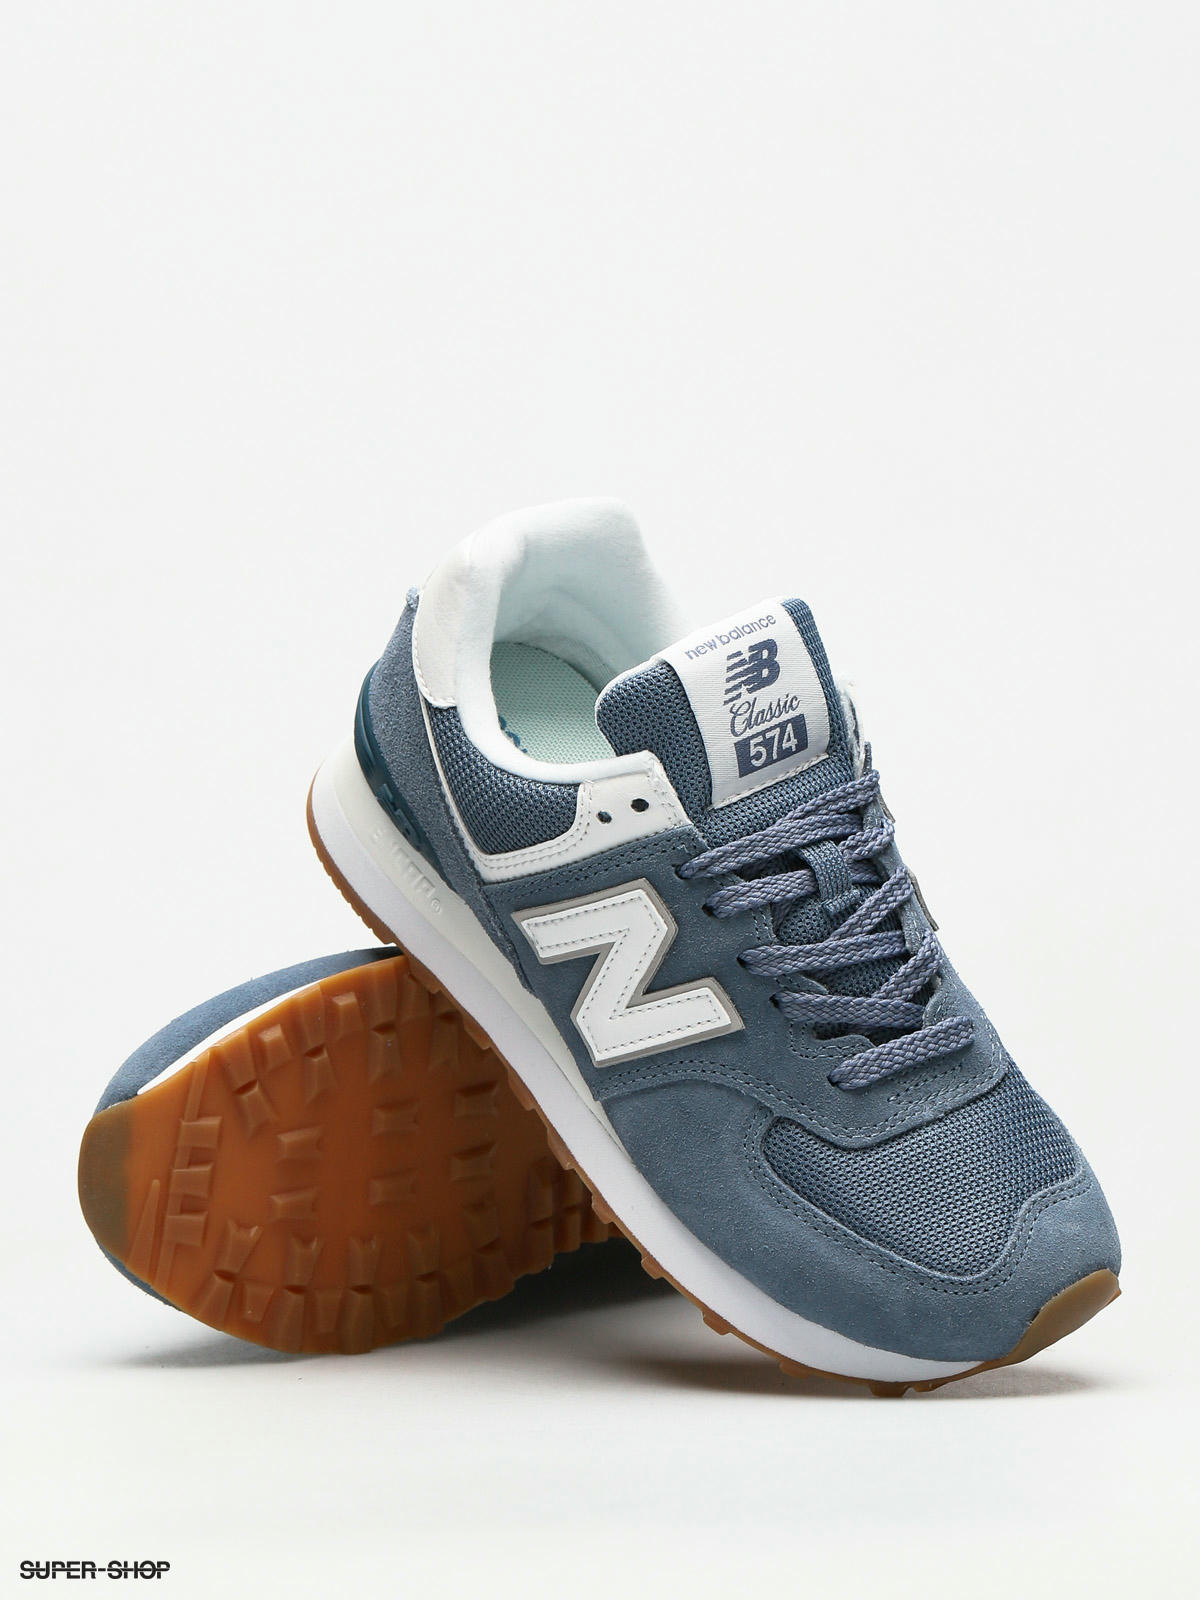 New Balance Shoes 574 Wmn porcelain blue)